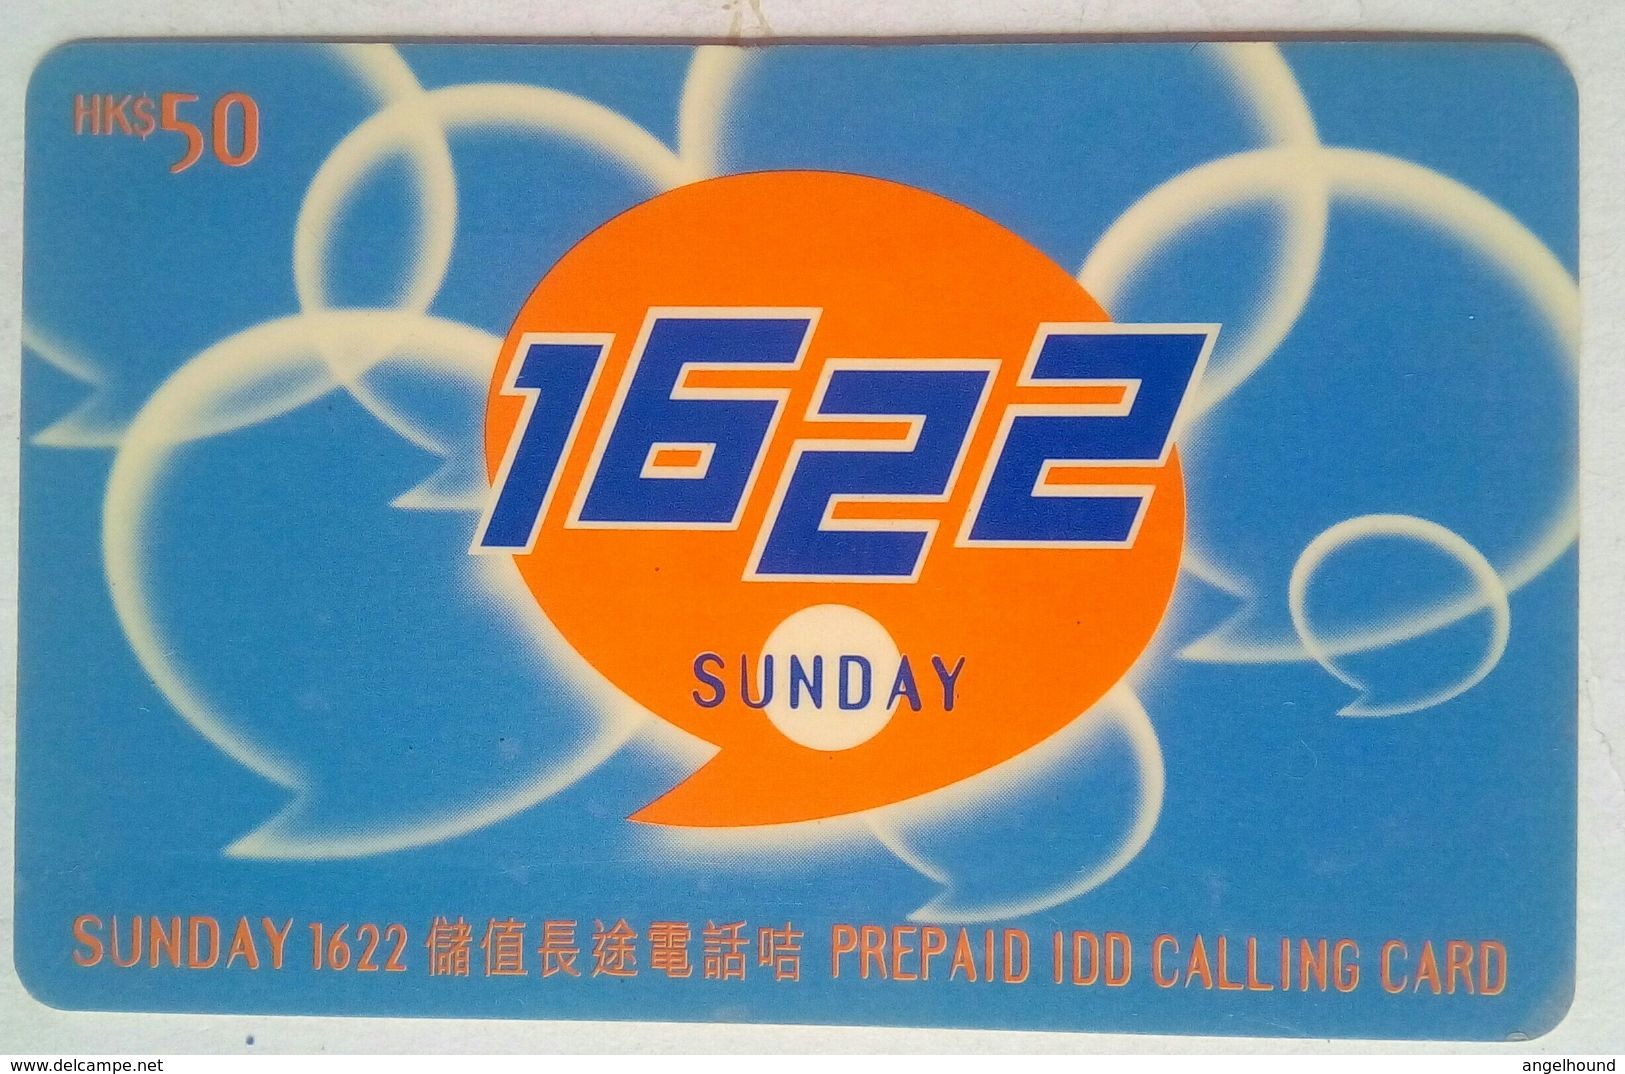 $50     1622 Sunday - Hongkong